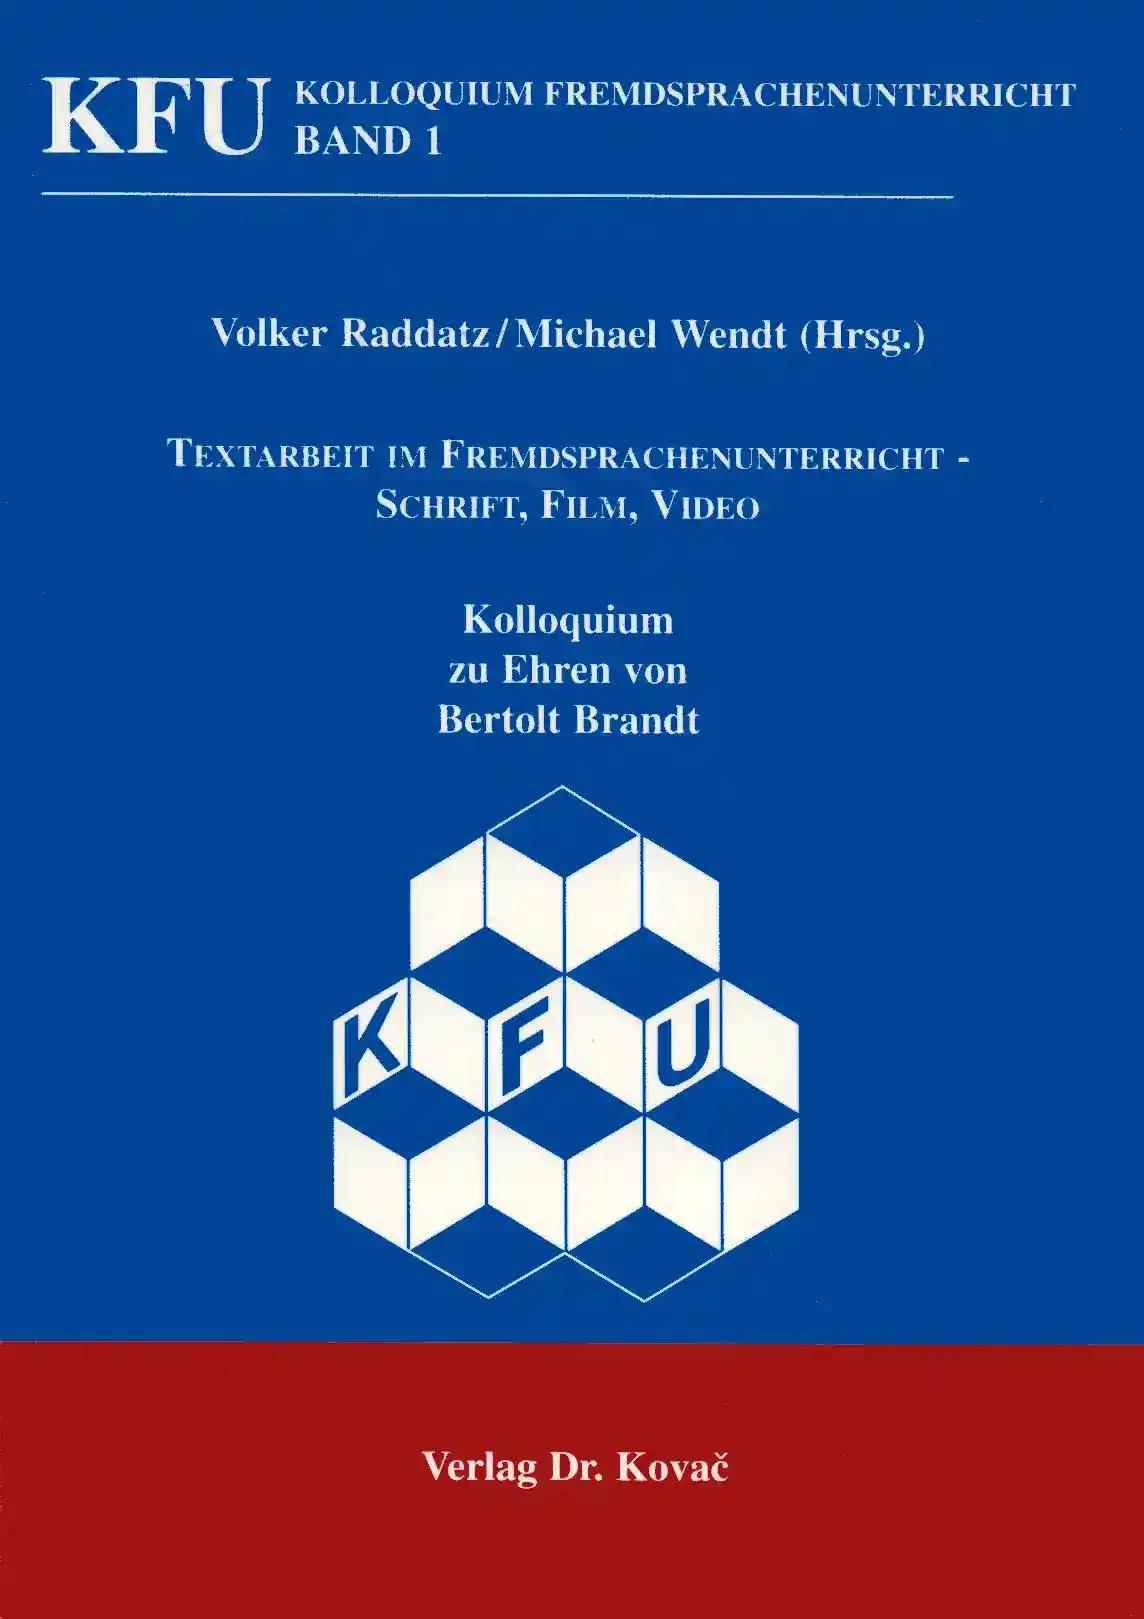 Textarbeit im Fremdsprachenunterricht - Schrift, Film, Video, Kolloquium zu Ehren von Berthold Brandt - Volker Radatz, Michael Wendt